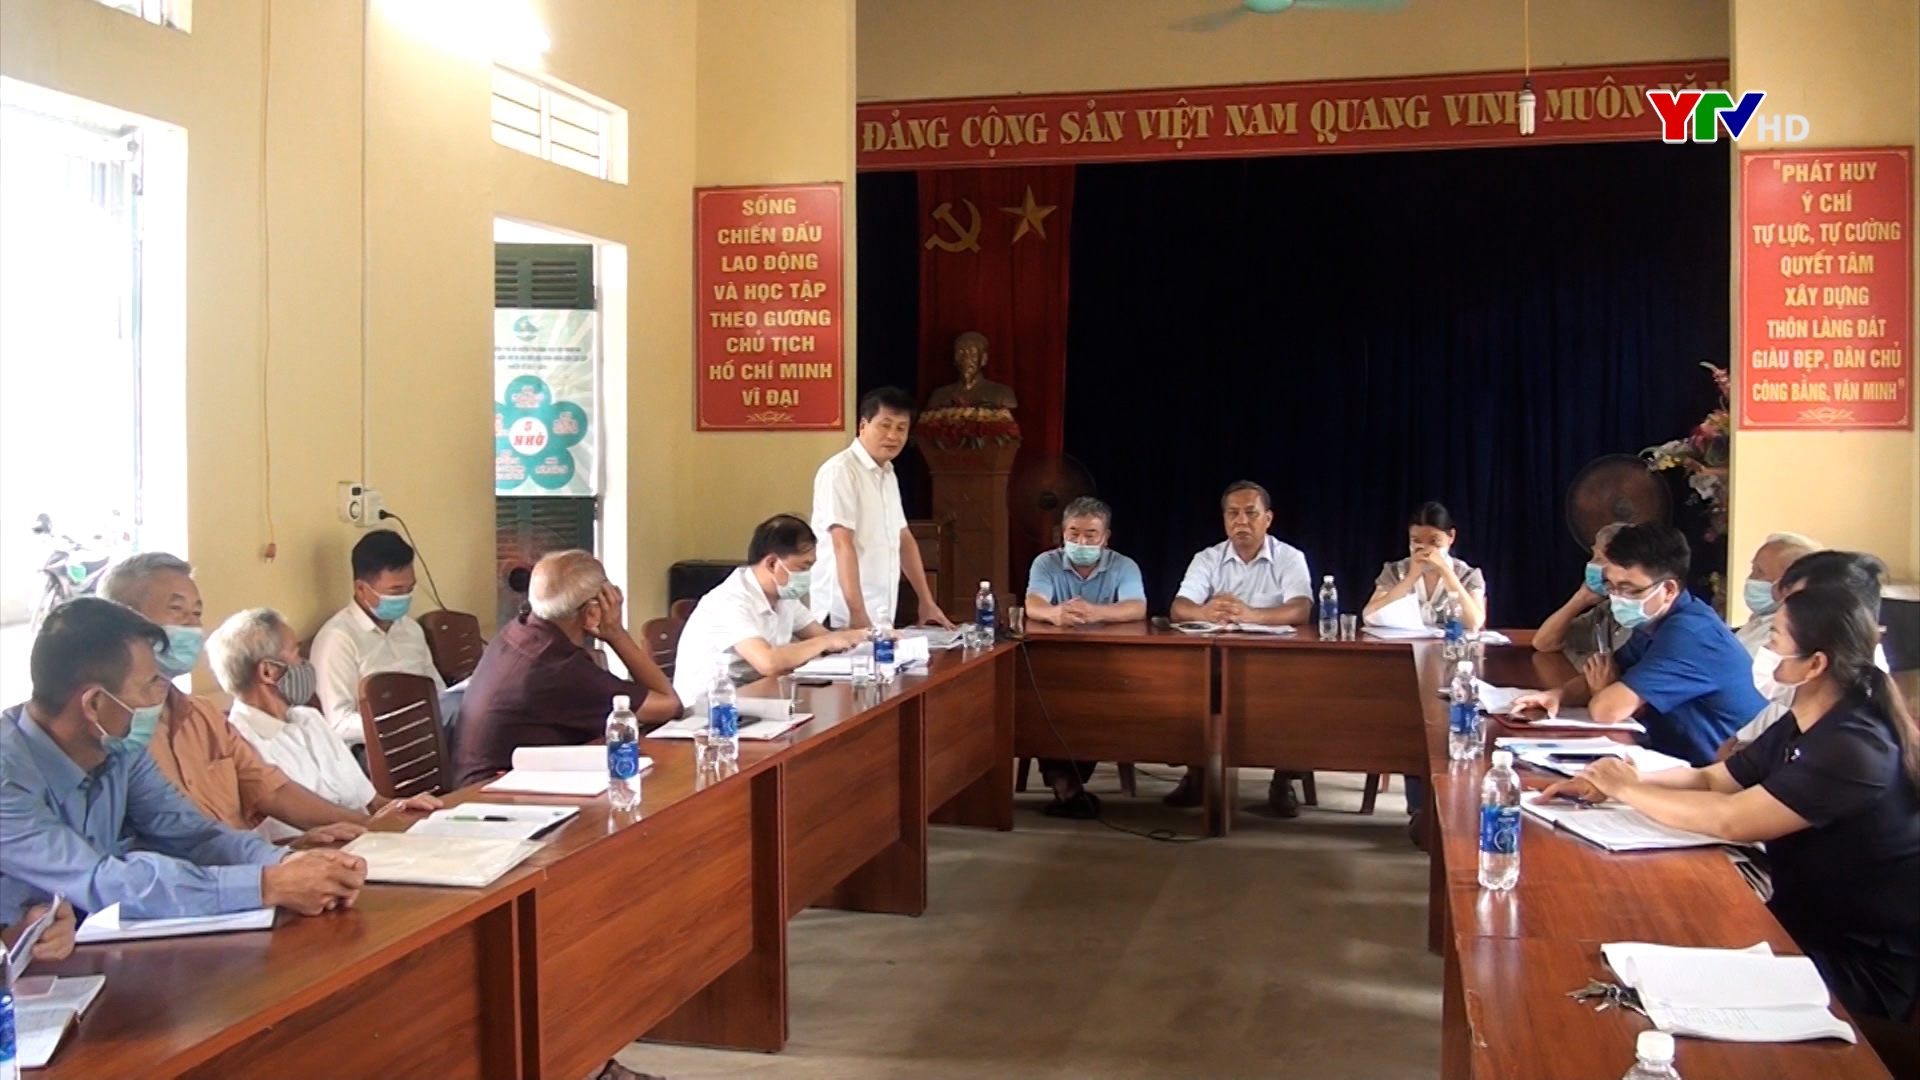 Đồng chí Ngô Hạnh Phúc- Phó Chủ tịch UBND tỉnh dự sinh hoạt tại Chi bộ Làng Đát, xã Đại Đồng, huyện Yên Bình